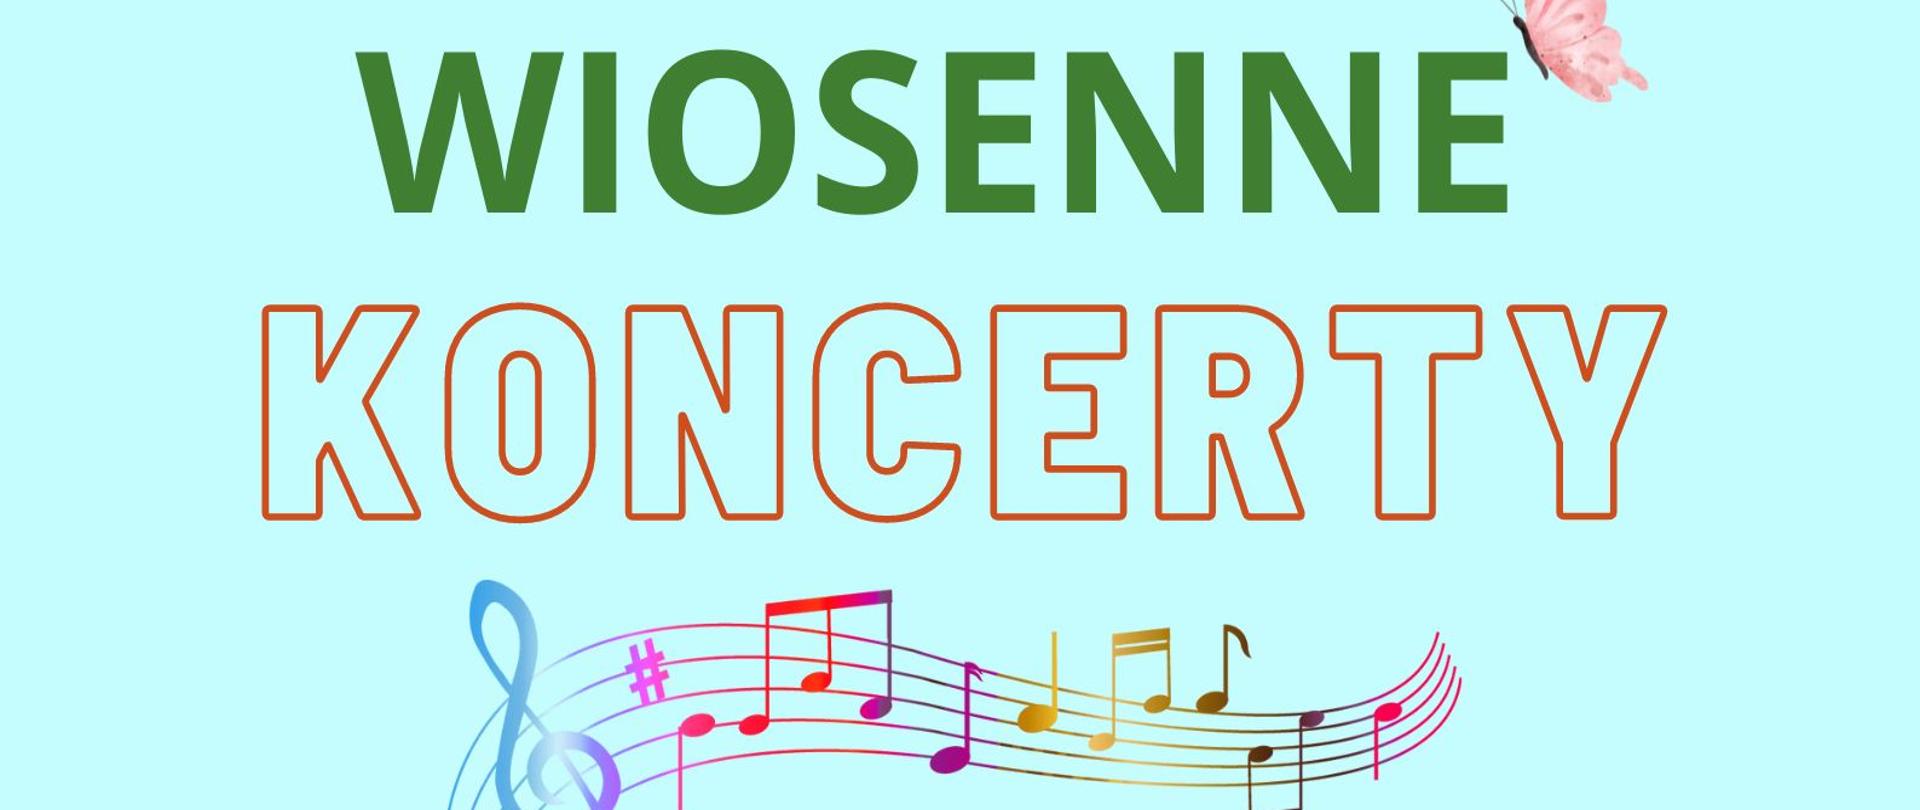 Na jasnoniebieskim tle od góry napis wielkimi i pogrubionymi literami: wiosenny koncert (wiosenny w kolorze zielonym, koncert - kontur czerwony, wypełnienie w kolorze tła). Poniżej kolorowa grafika przedstawiająca klucz wiolinowy i zakręconą pięciolinię z nutkami. Jeszcze niżej grafika przedstawiająca rysunek niebieskiego pianina wśród różowych i fioletowych kwiatów z zielonymi łodyżkami i liśćmi. Na dole zamieszczone zostały informacje o wydarzeniach – dwóch koncertach dla szkół podstawowych: sala koncertowa PSM I st. w Kępnie, Szkoła Podstawowa Nr 1, 18 maja 2023, Szkoła Podstawowa Nr 2, 19 maja 2023. Informacje dla obu szkół oddzielone zostały pionową kreską. Nazwy szkół w kolorze czerwonym, pozostałe napisy w kolorze zielonym. 